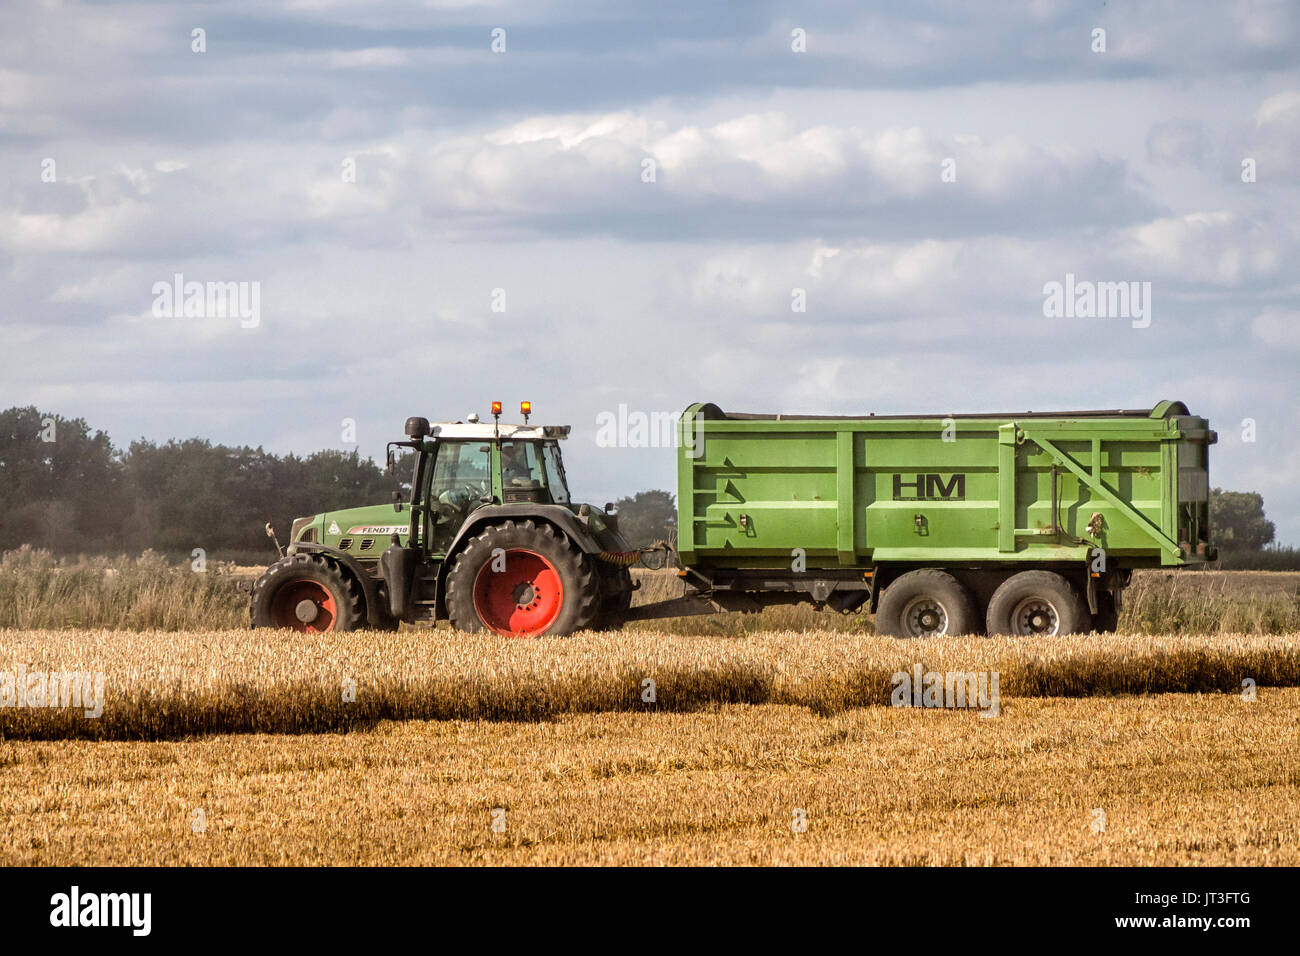 ROCHFORD, ESSEX, Großbritannien - 06. AUGUST 2017: Traktor und Anhänger warten darauf, während der Ernte zum Start des geernteten Getreides aufgerufen zu werden. Stockfoto